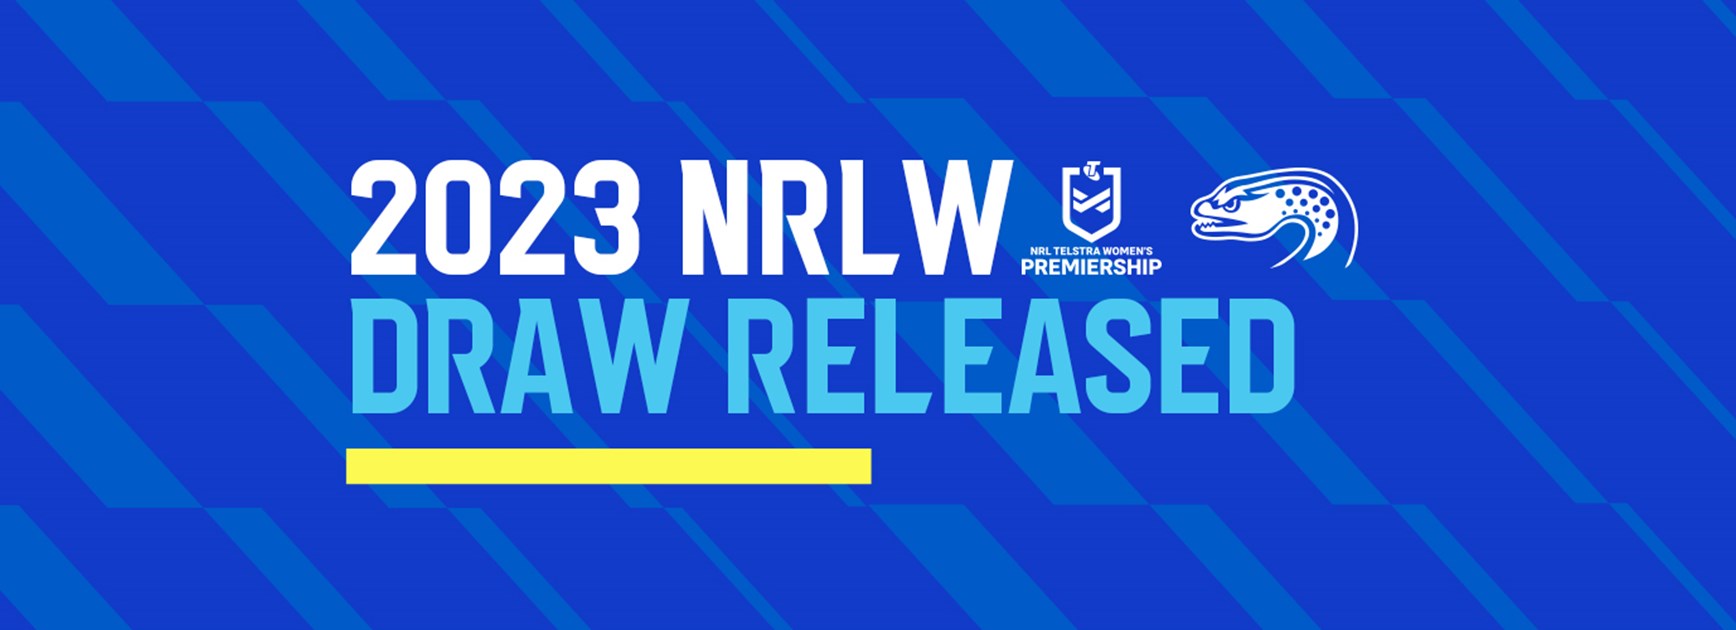 Eels' 2023 NRLW schedule revealed